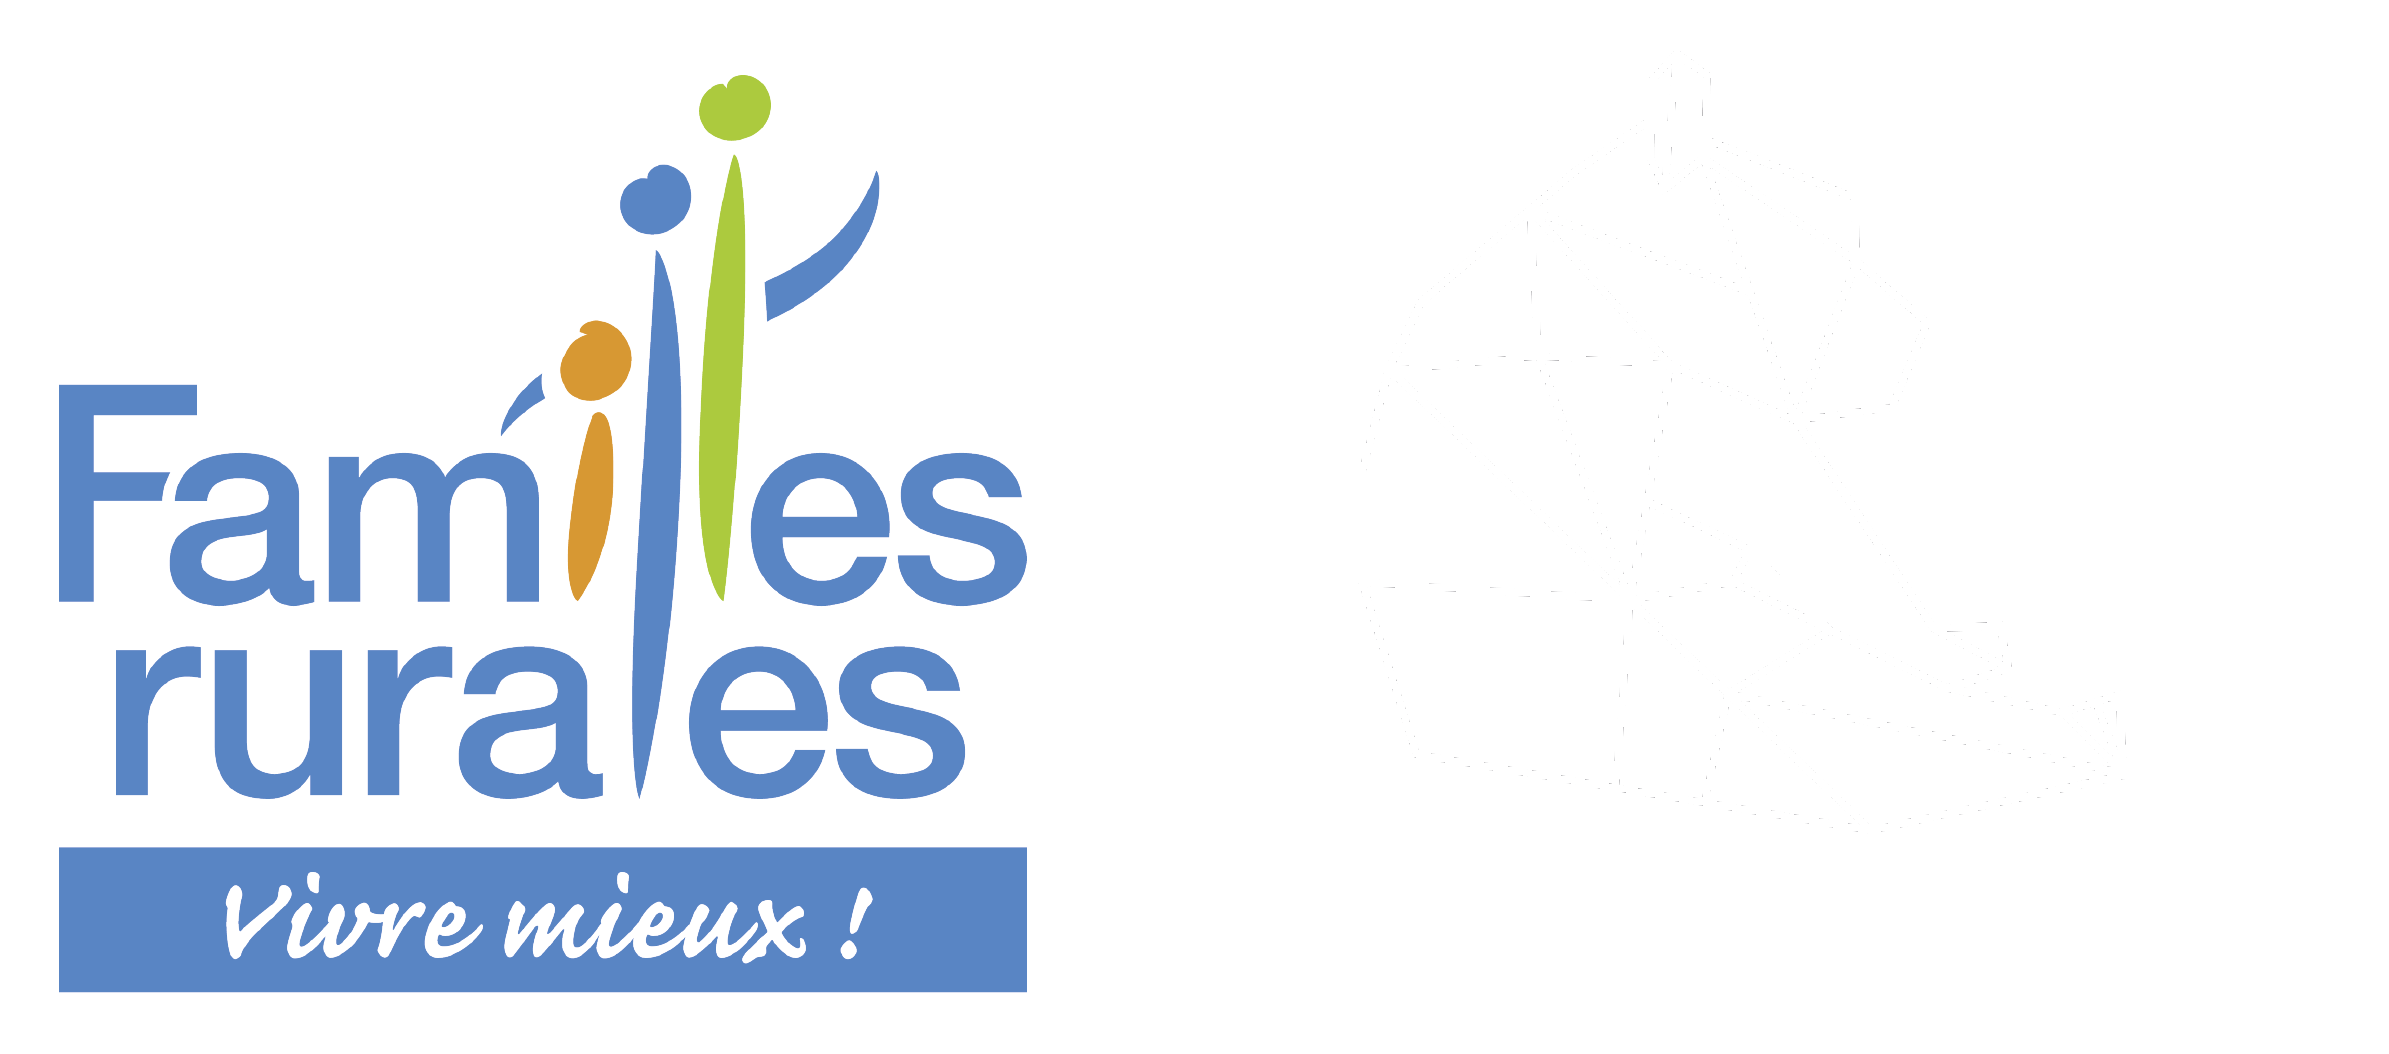 Crèche Les Bisounours à St Georges d'Espéranche (38790) - Découvrez le projet pédagogique que nous avons à coeur de défendre au sein de notre crèche.